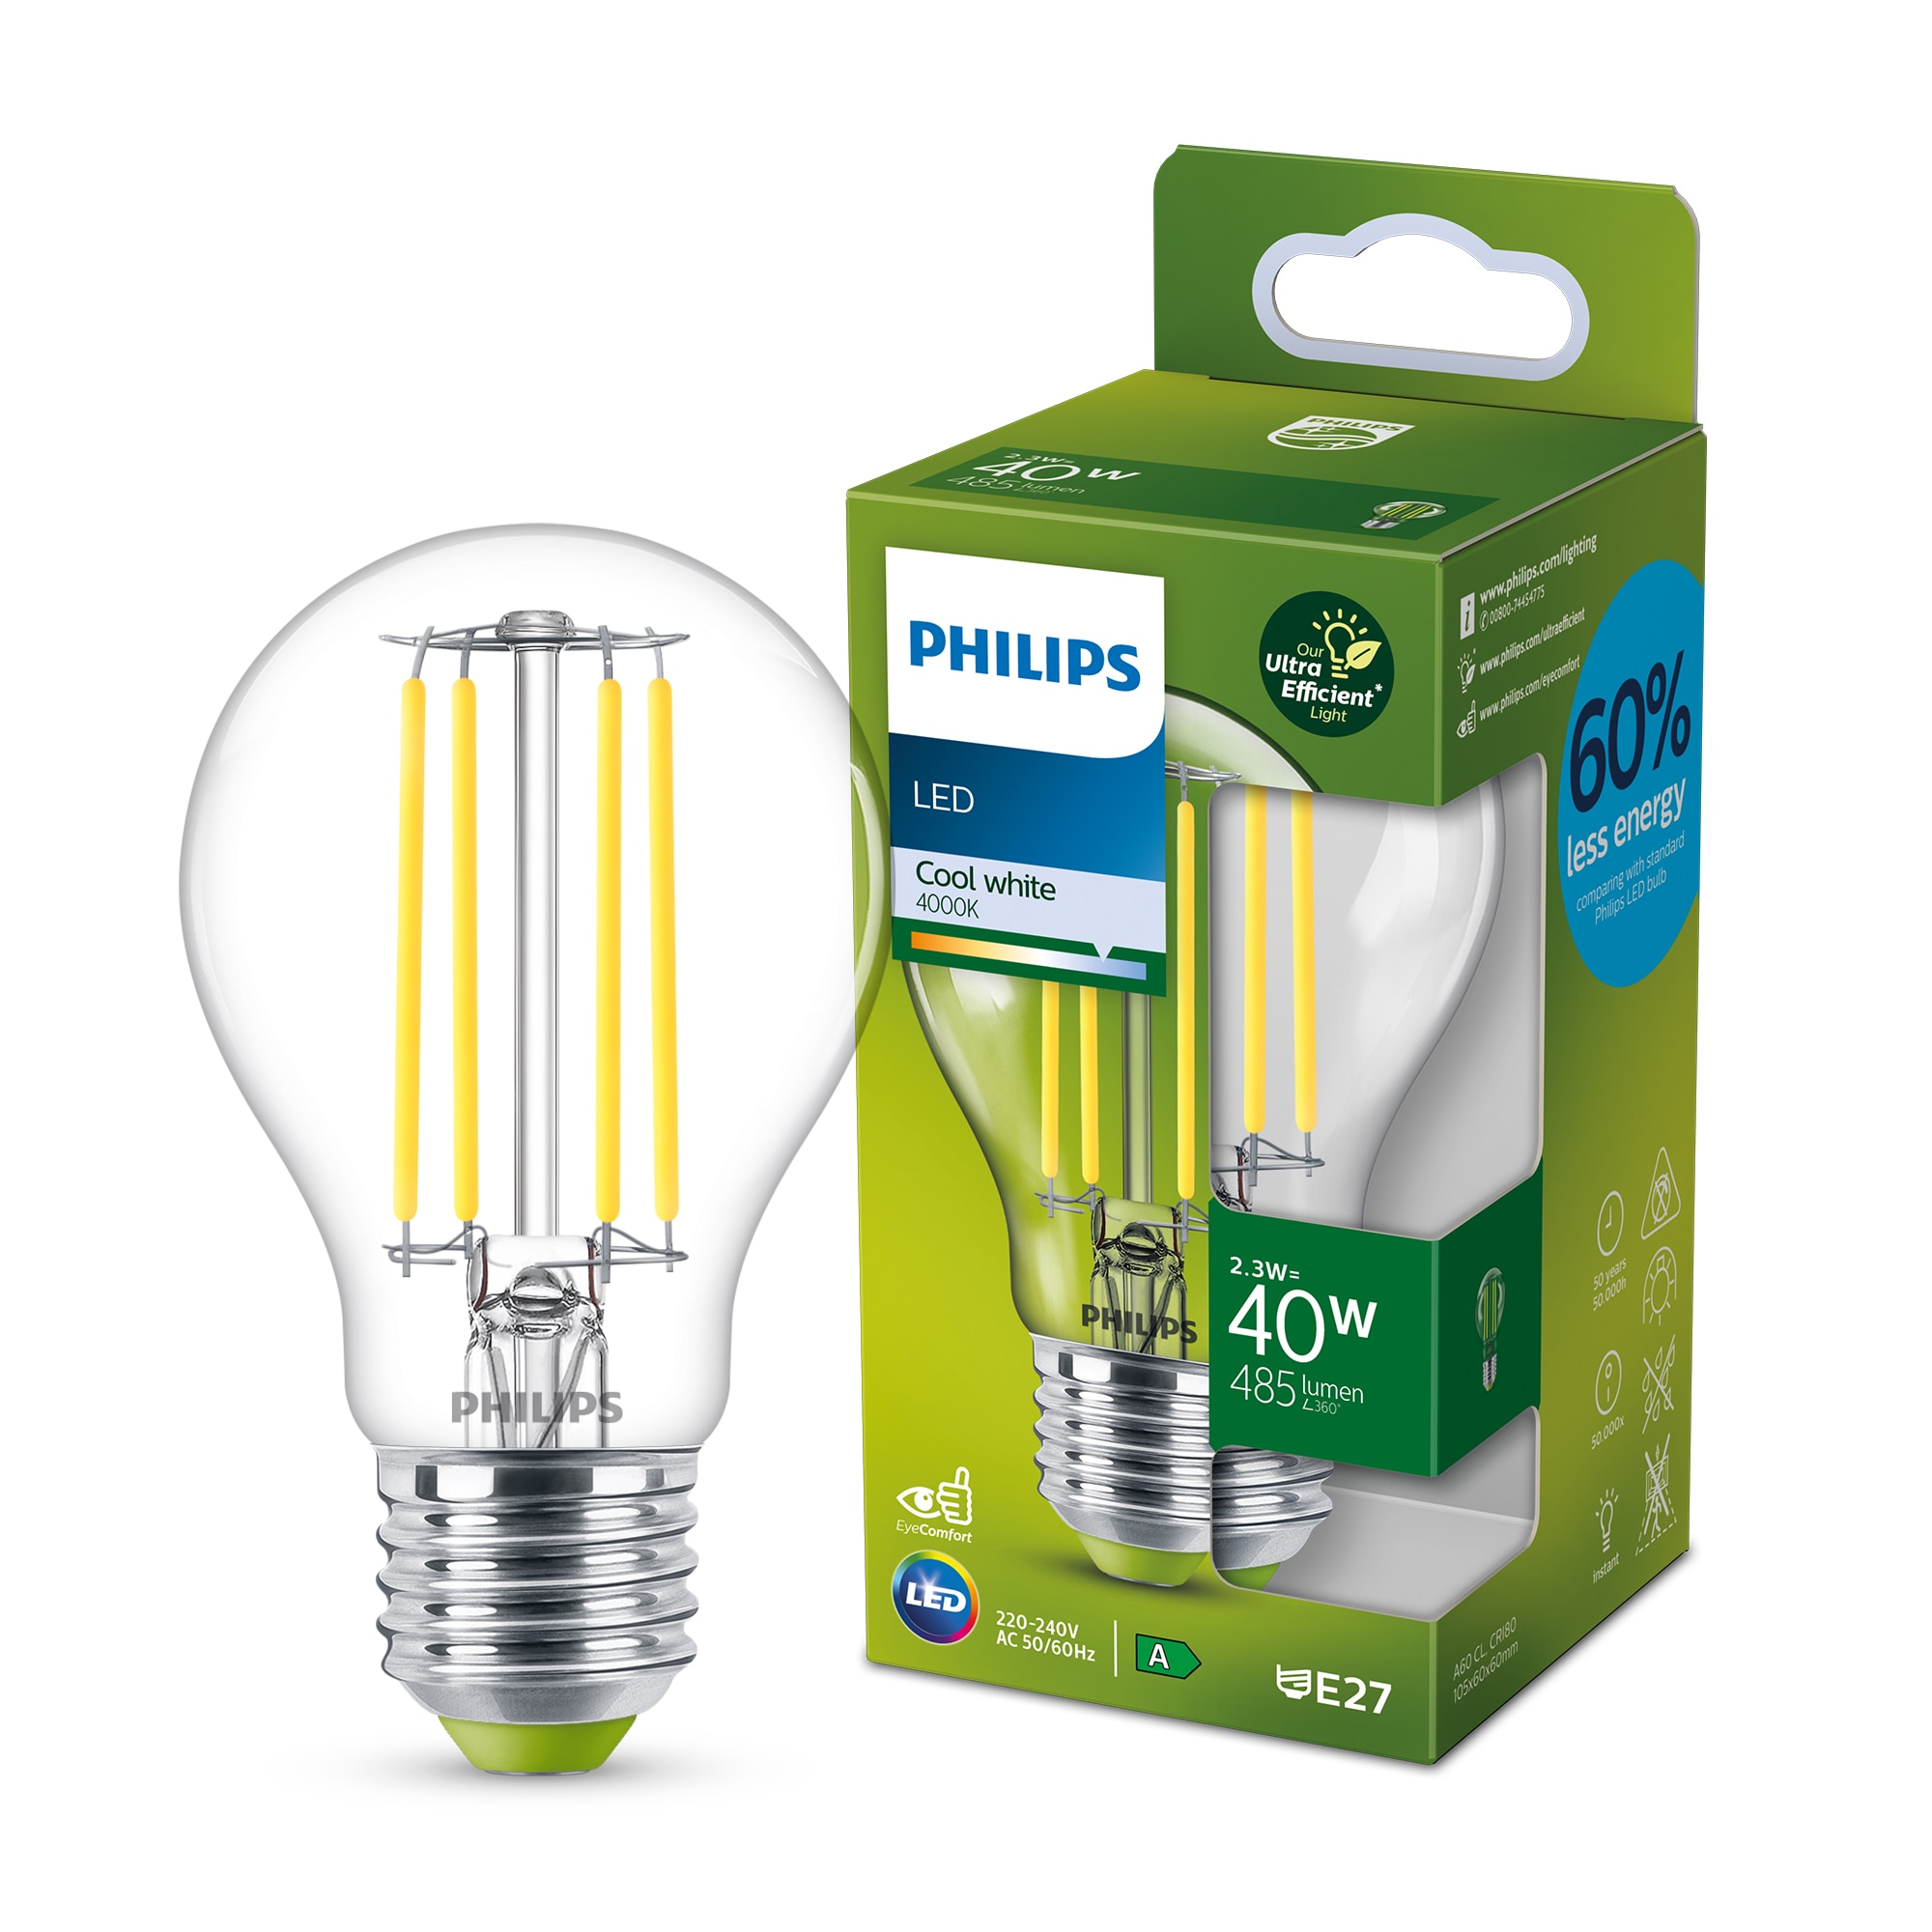 Gronden ondanks Zenuw De meest energiezuinige Philips LED A-klasse lampen | Signify  Bedrijfswebsite